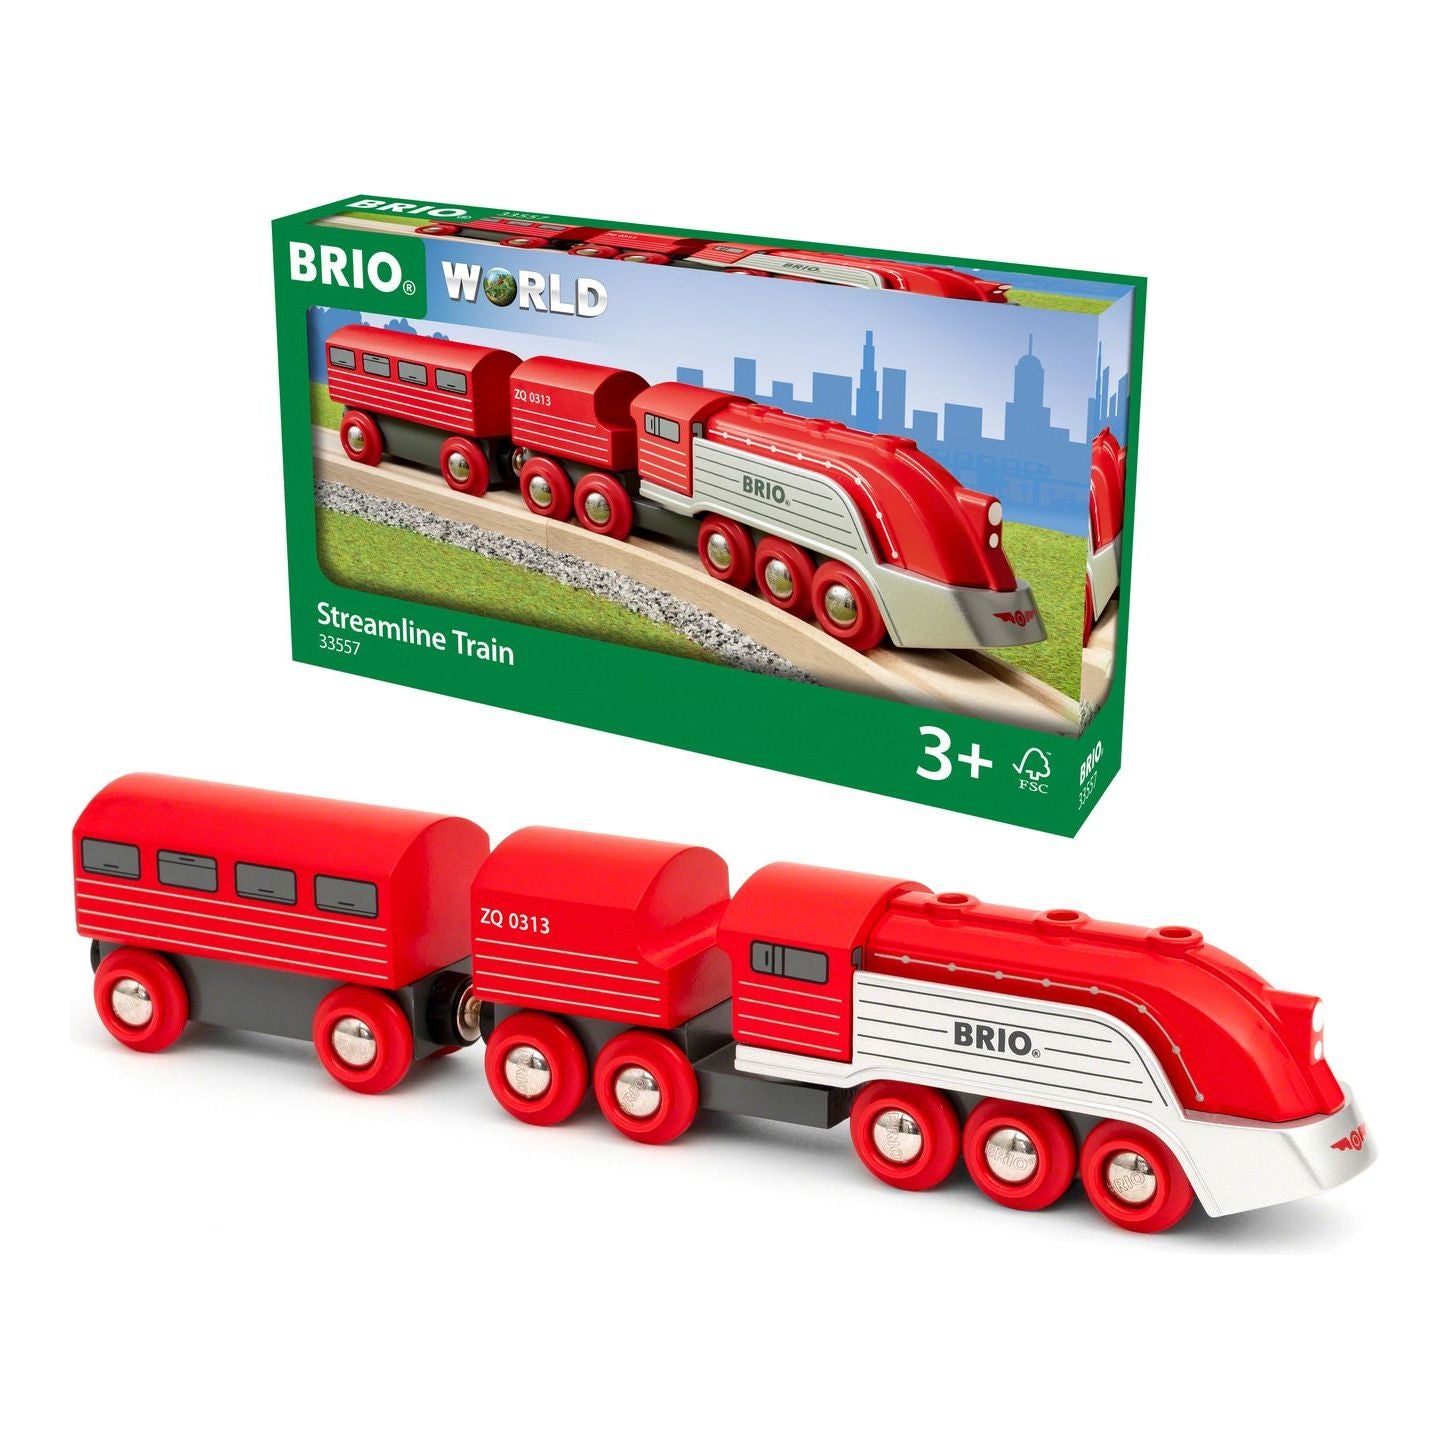 Brio Streamline Train BRIO